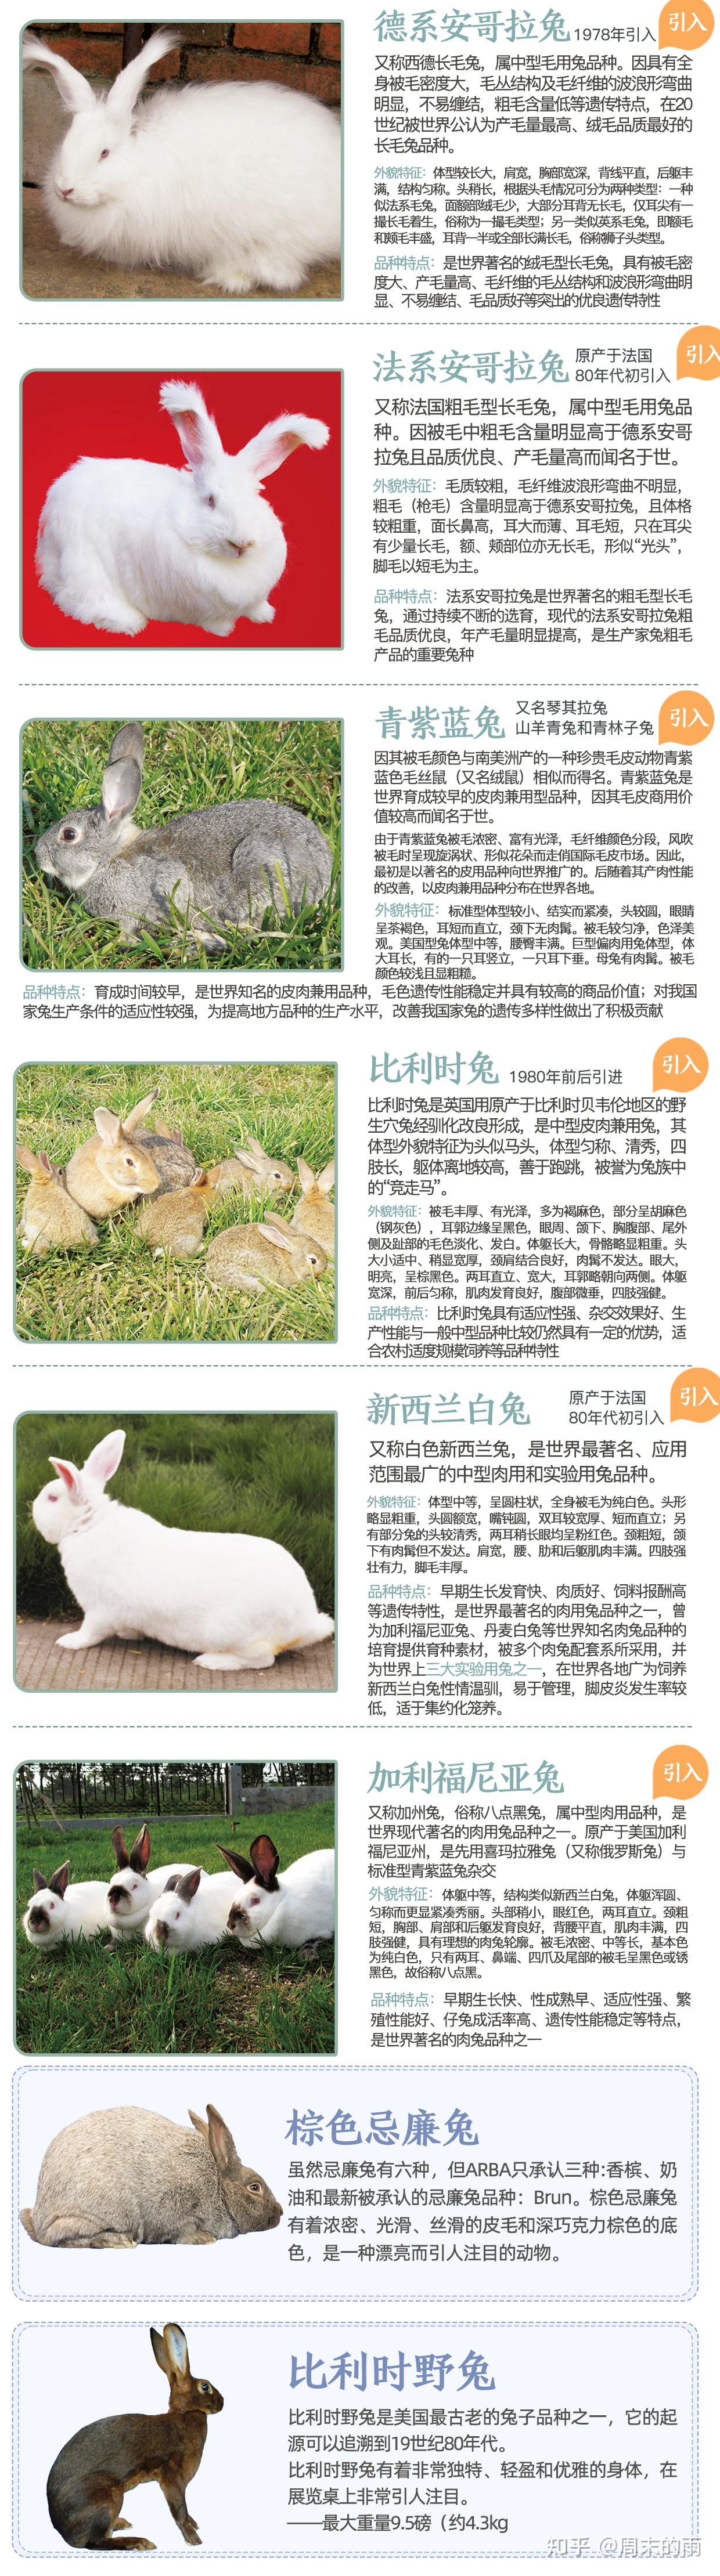 行业科普 - 中国畜牧业协会兔业分会